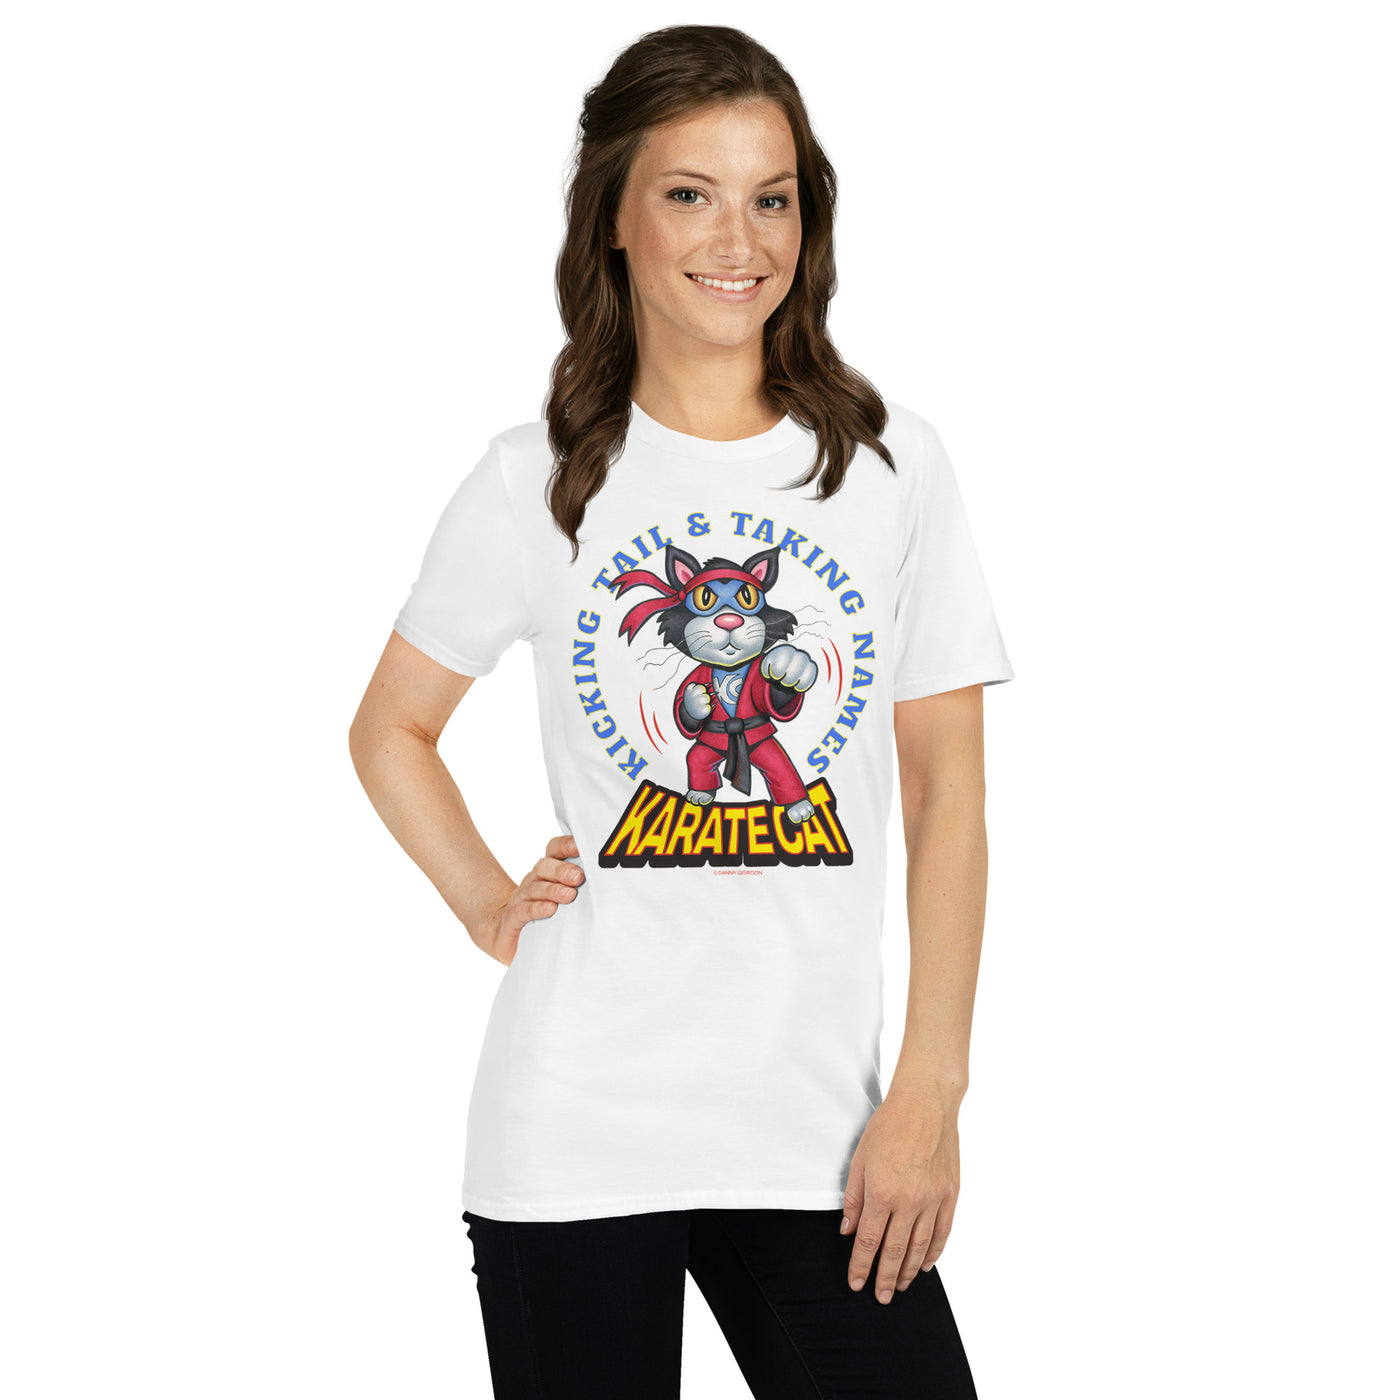 Karate Cat Kicking Tail Taking Names Unisex T-Shirt